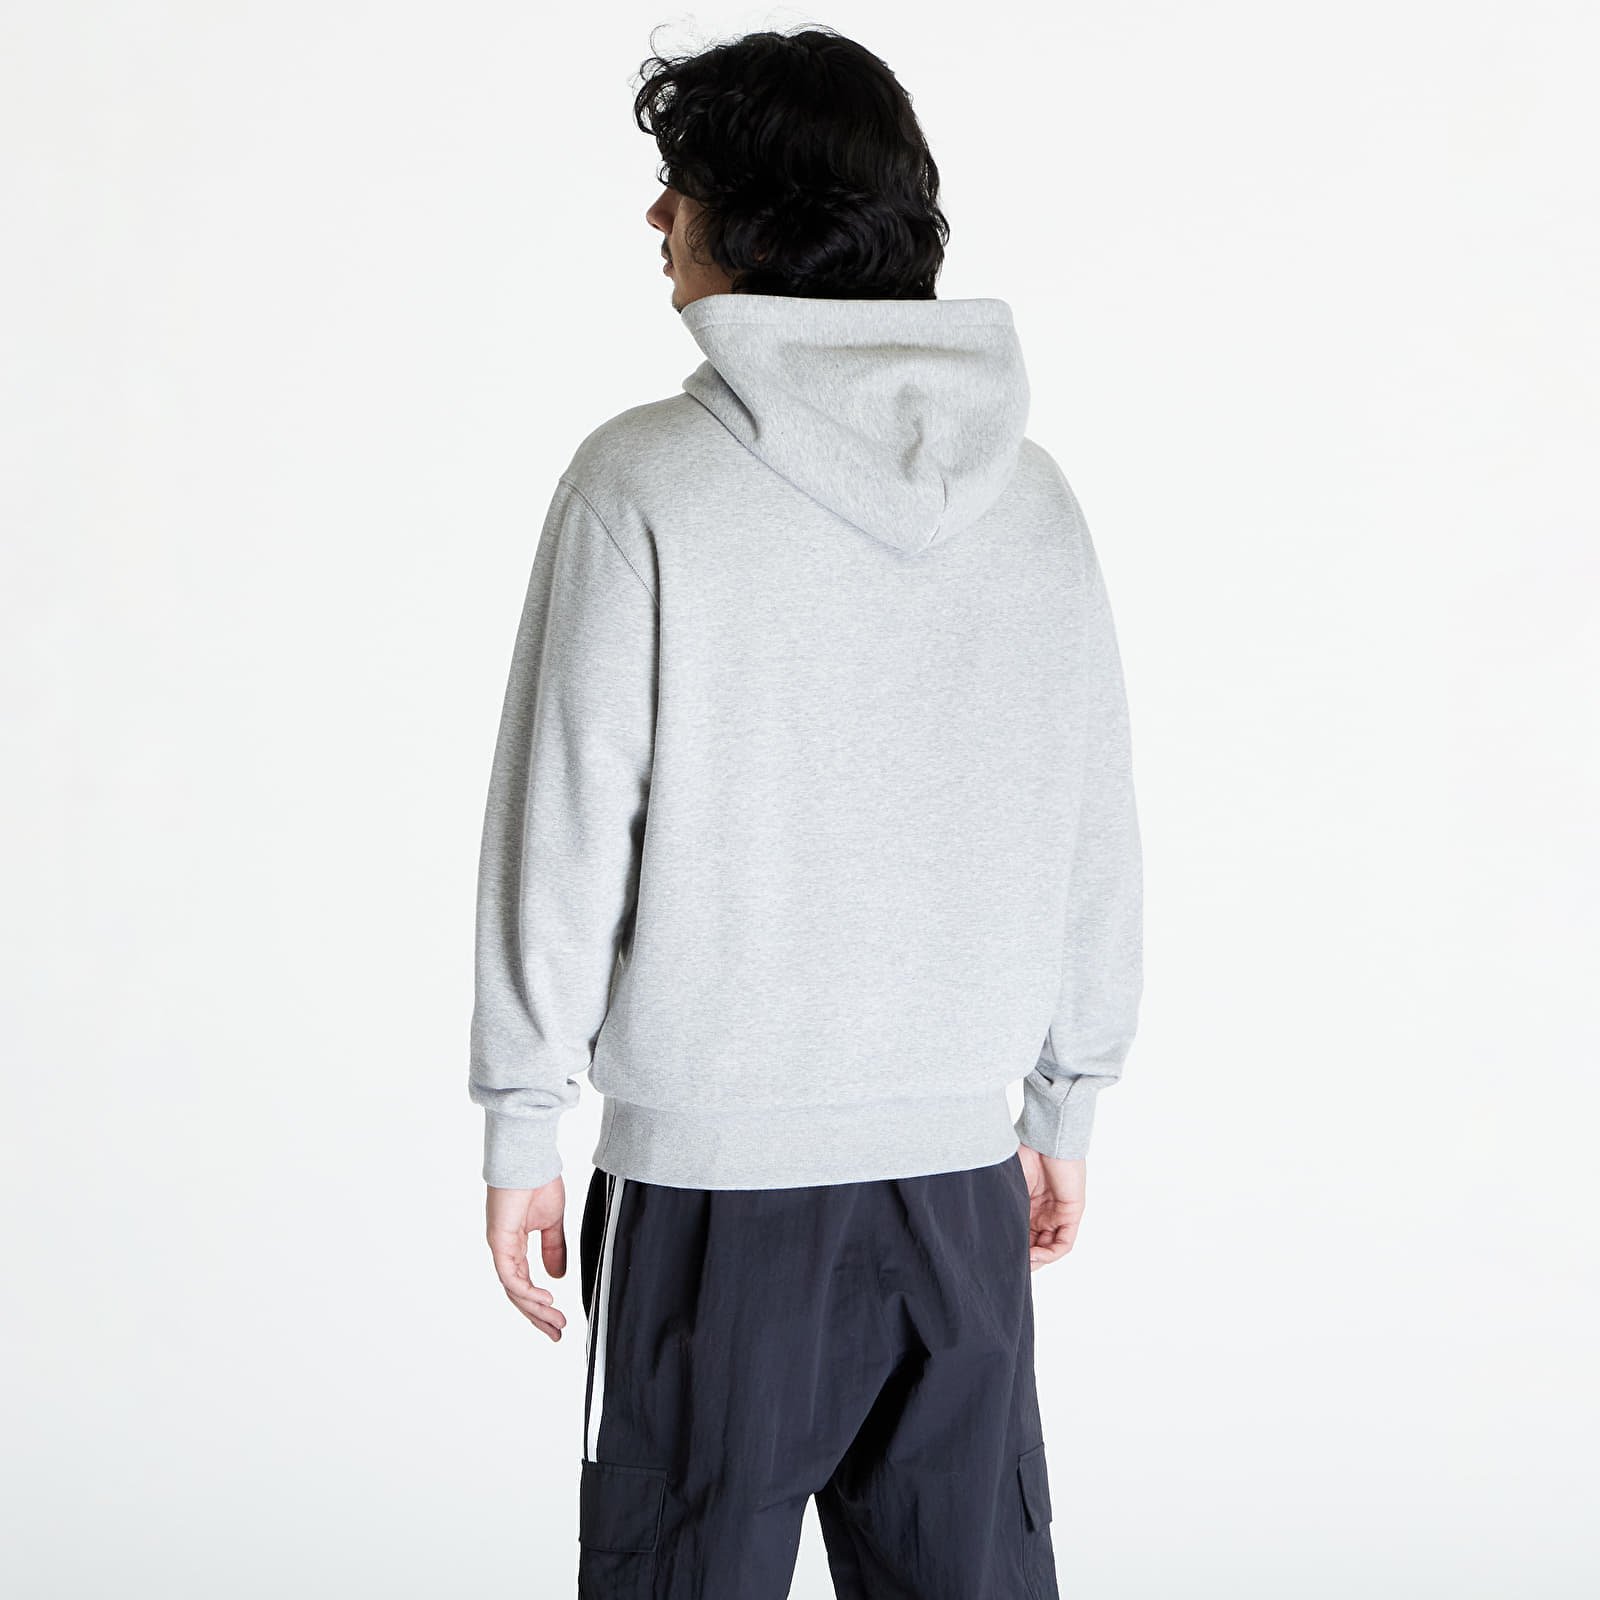 Men's hoodie Hooded Sweatshirt Gray